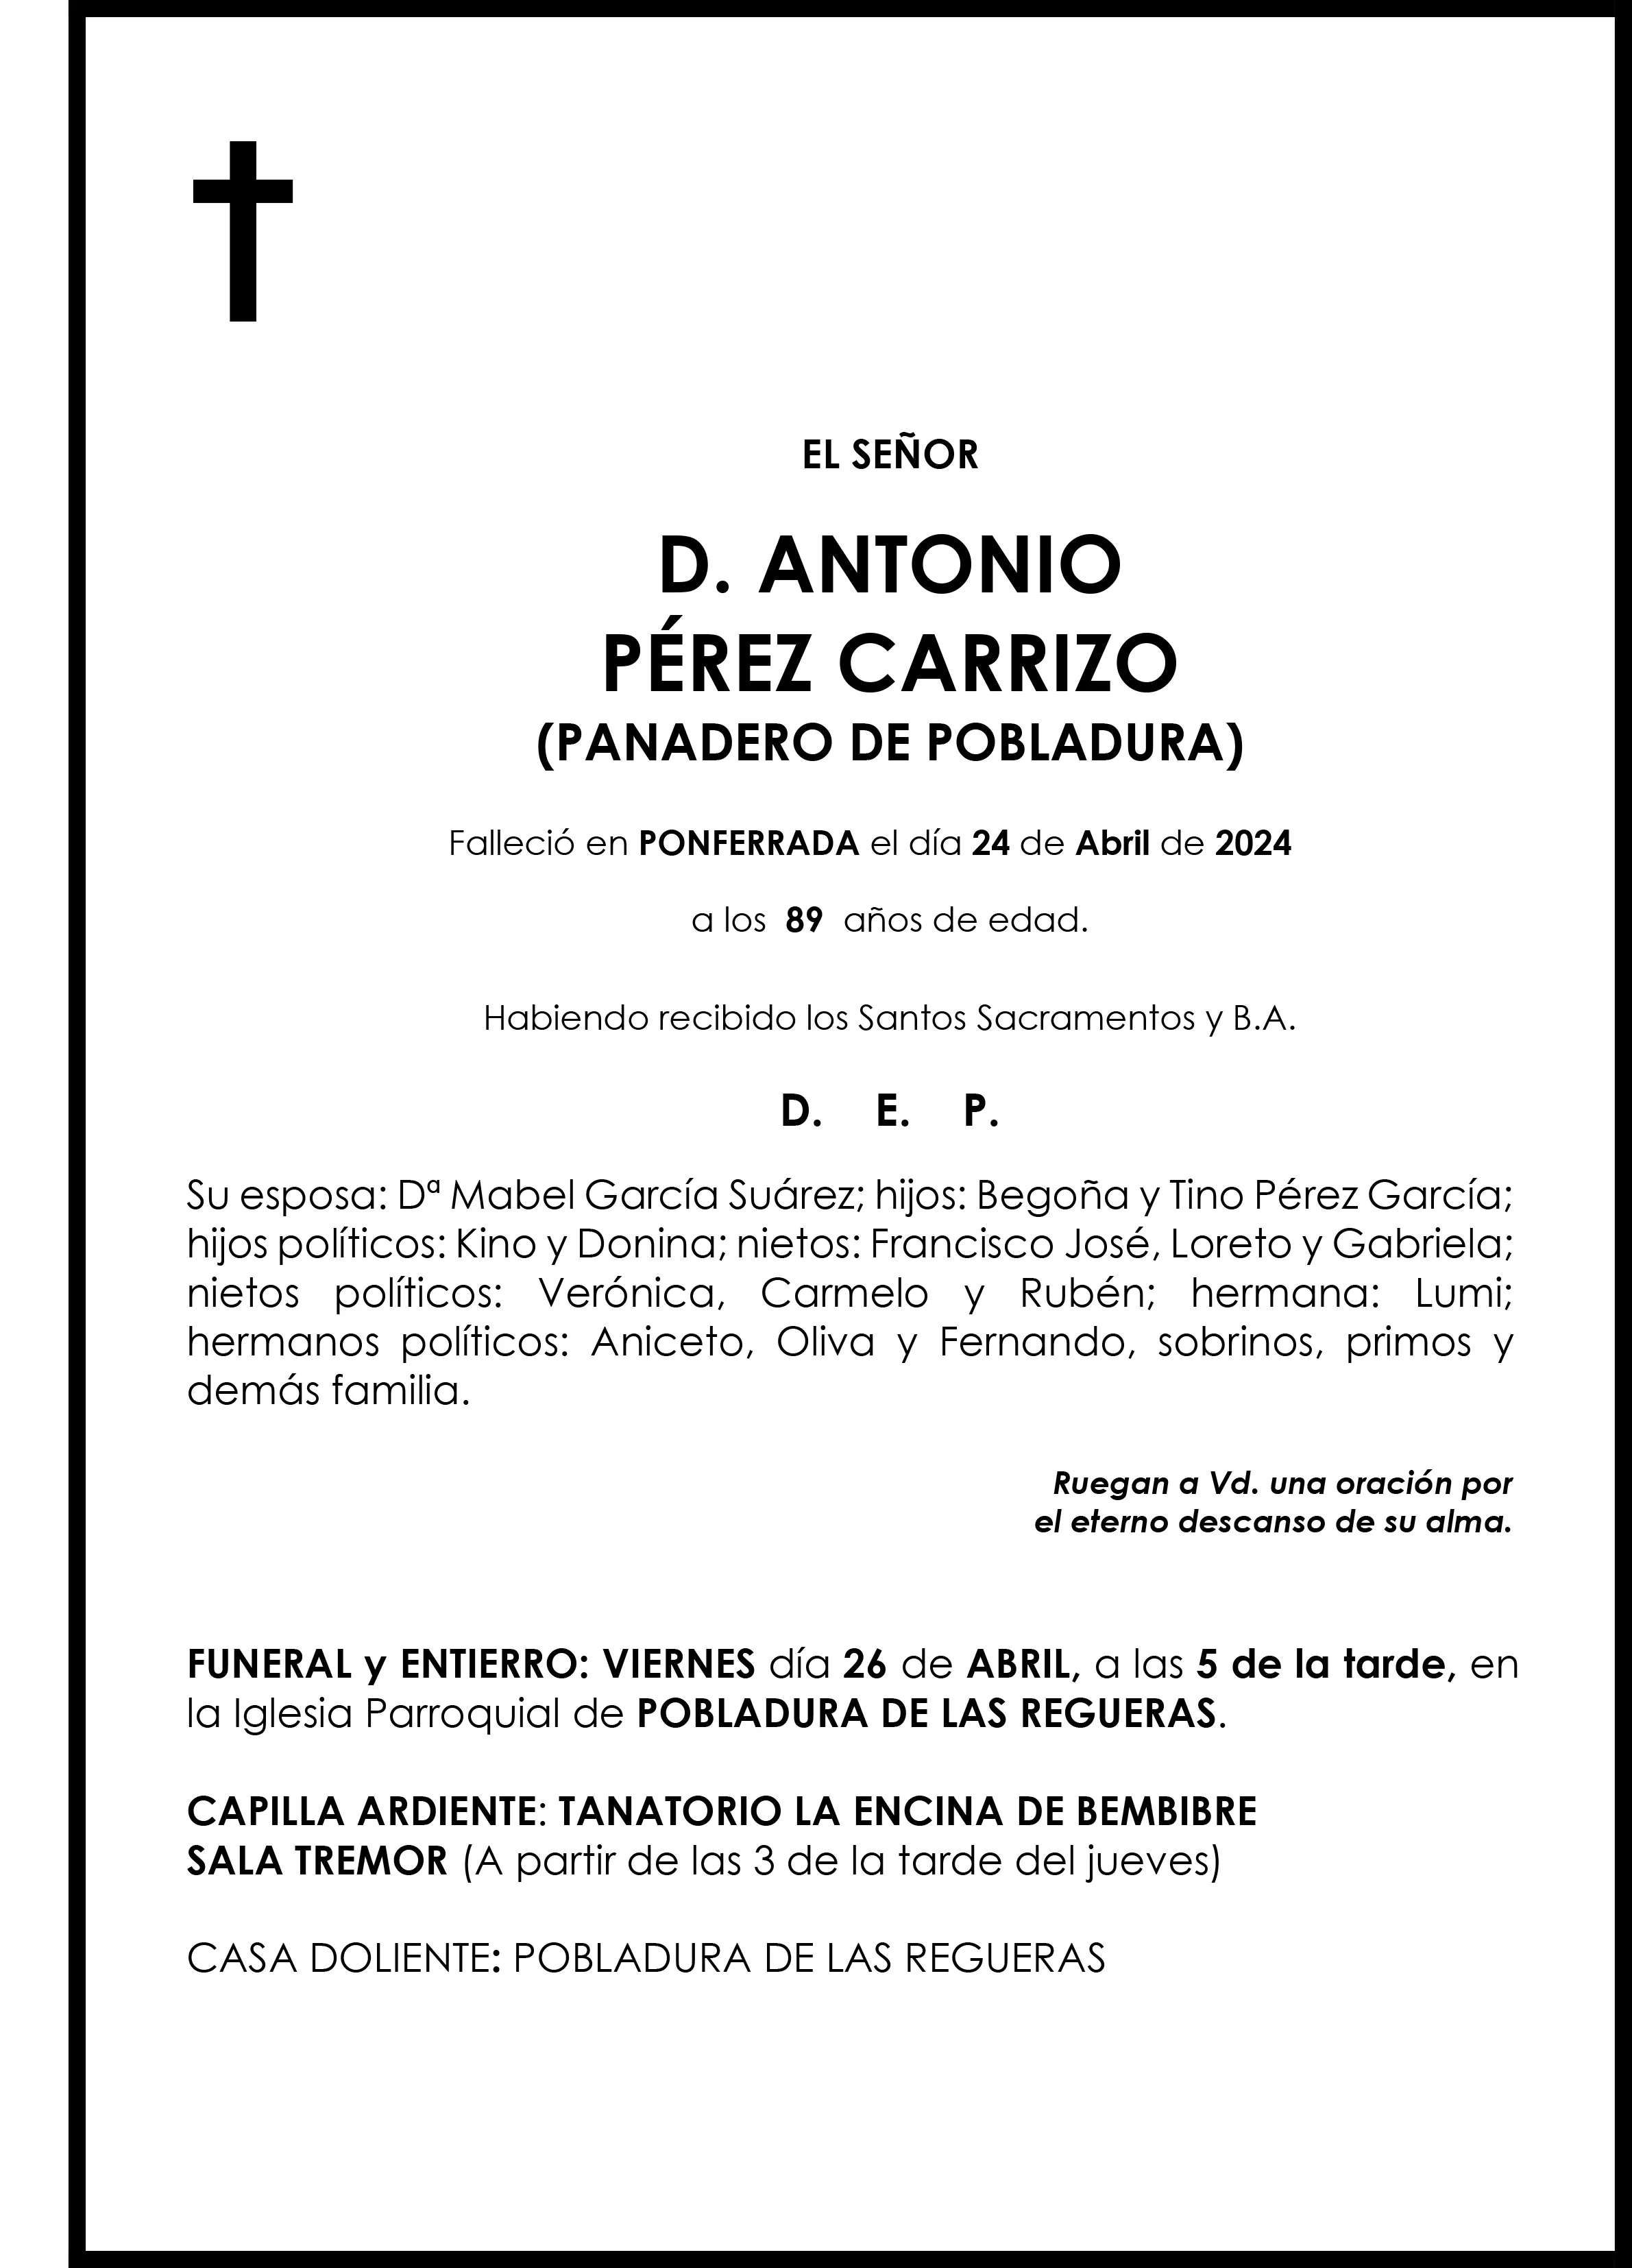 ANTONIO PEREZ CARRIZO